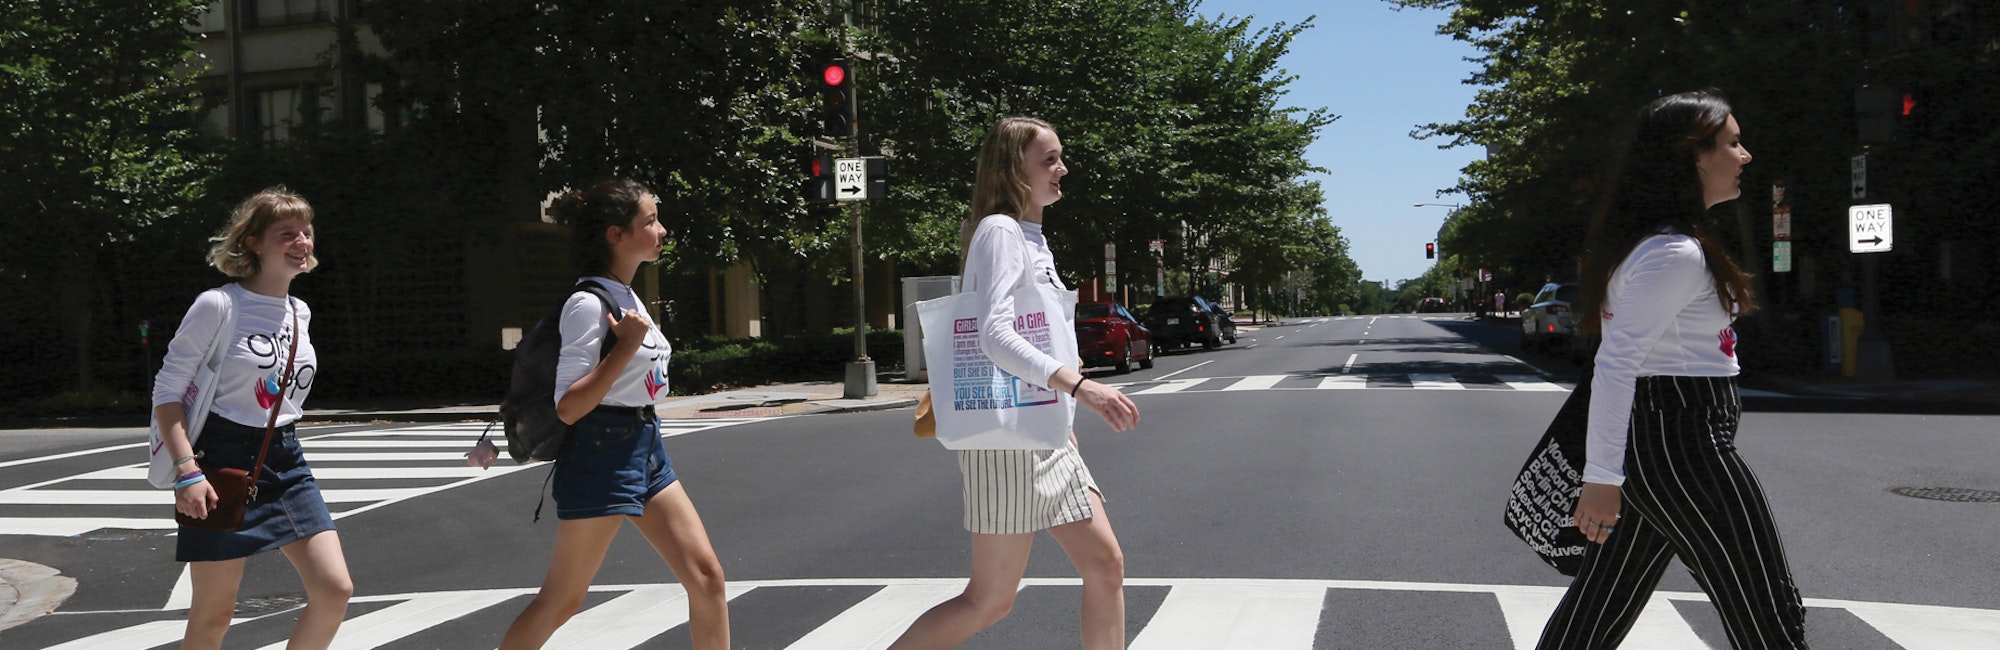 Meninas atravessando a rua em fila, olhando para frente e usando a camiseta de consultora adolescente